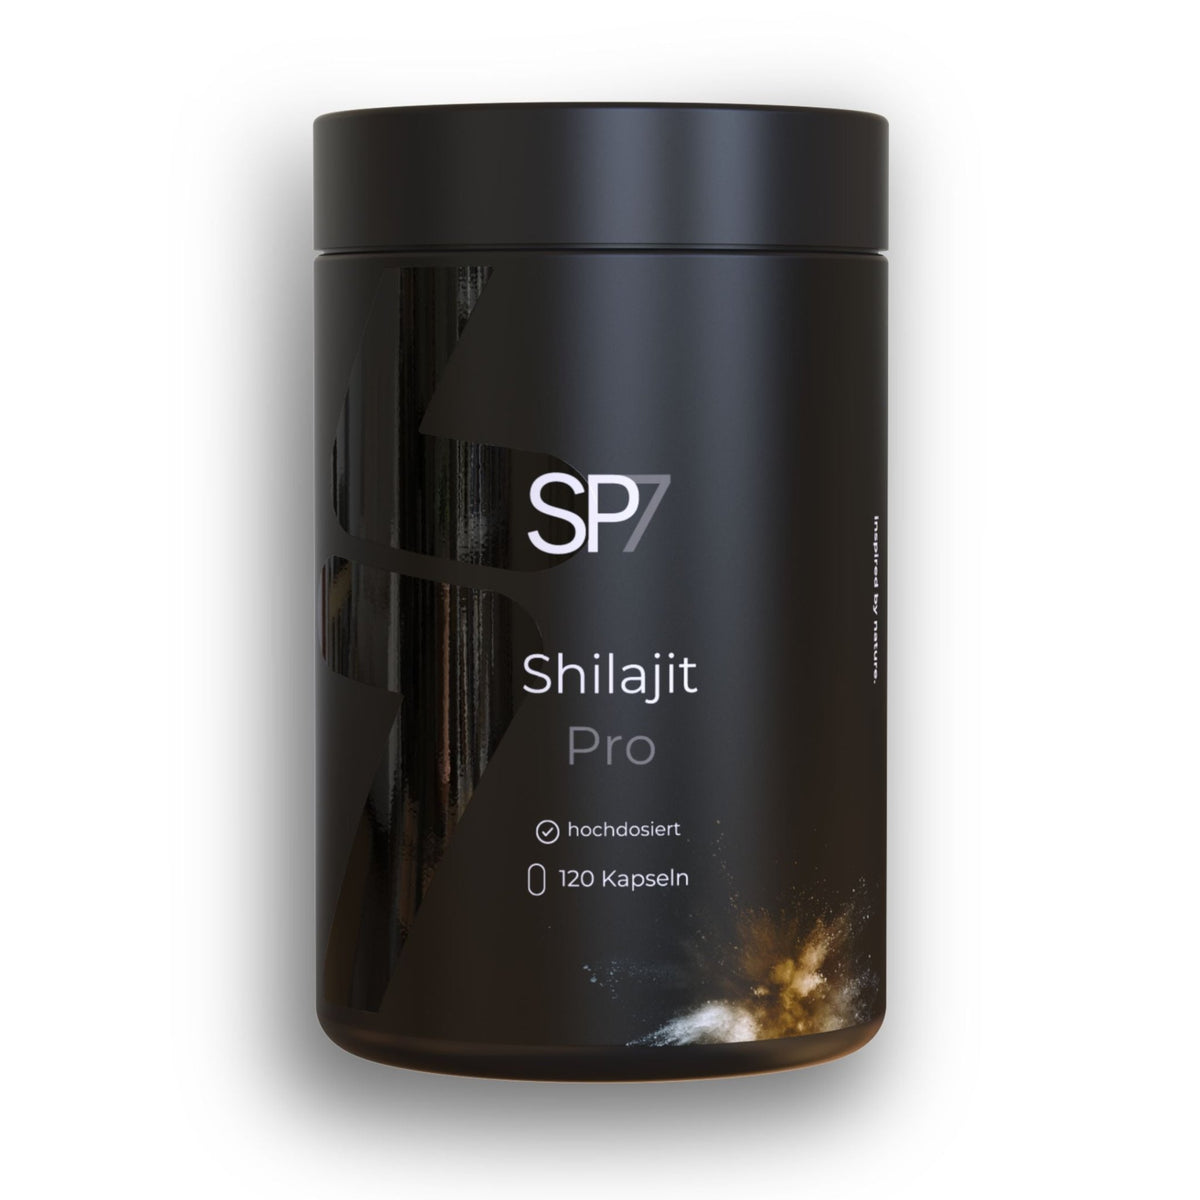 Shilajit Pro Kapseln - SP7 DE